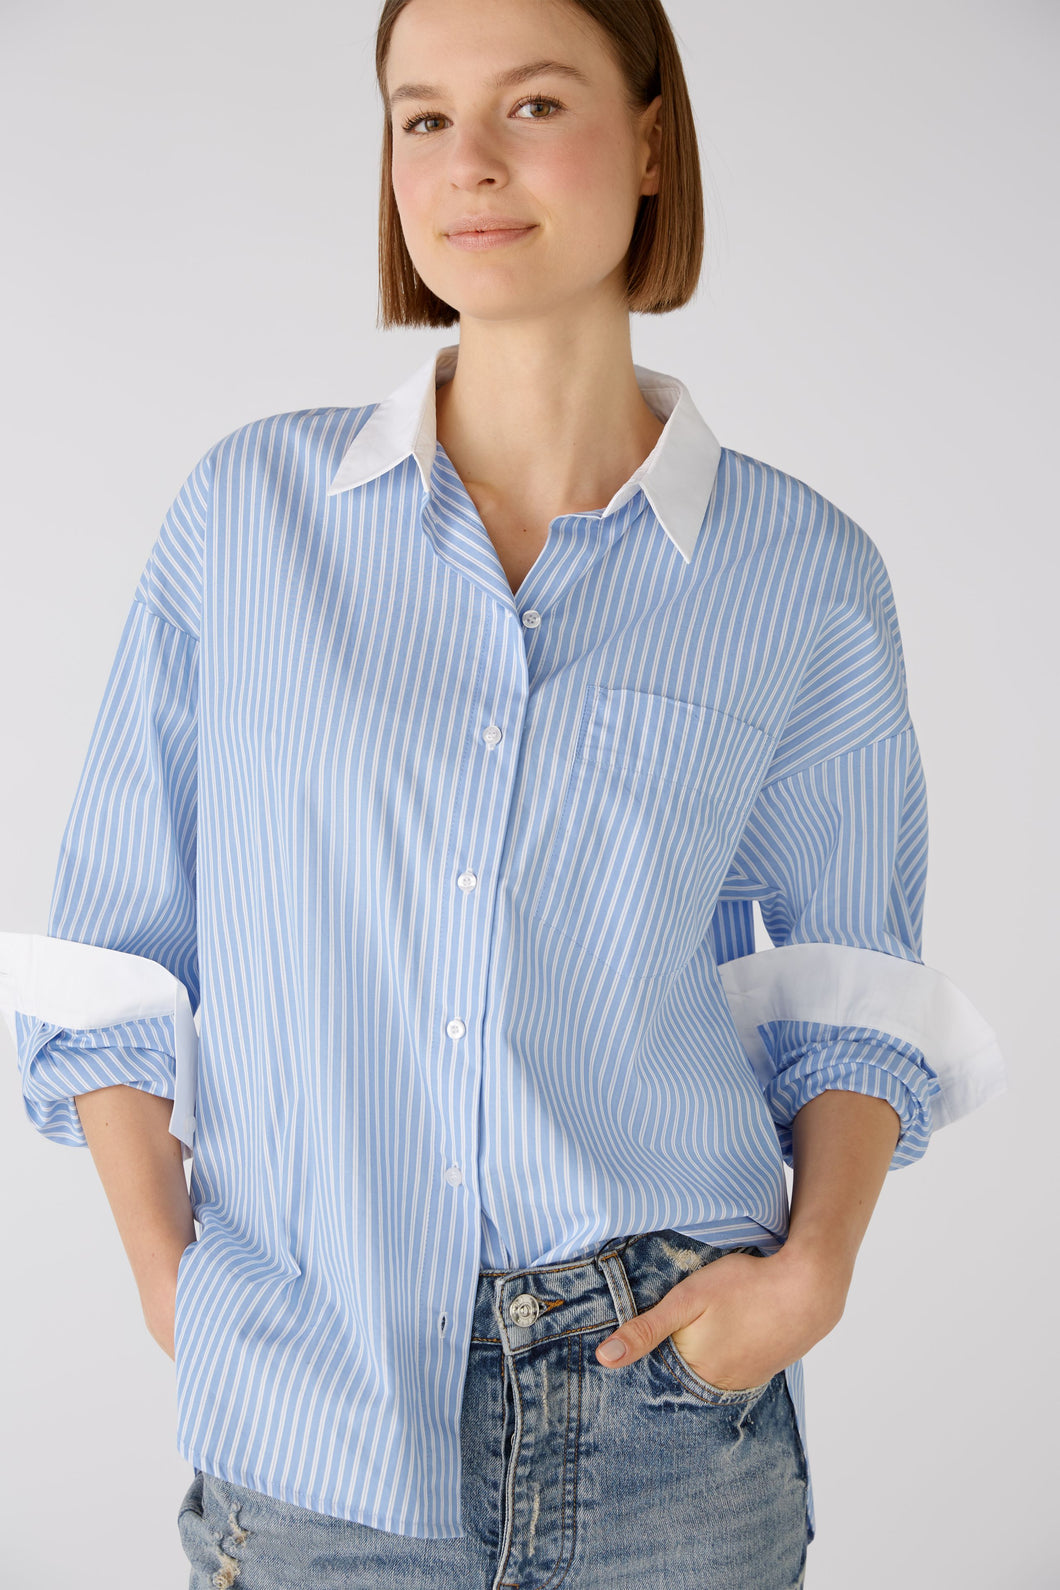 Oui - Blue pin stripe shirt